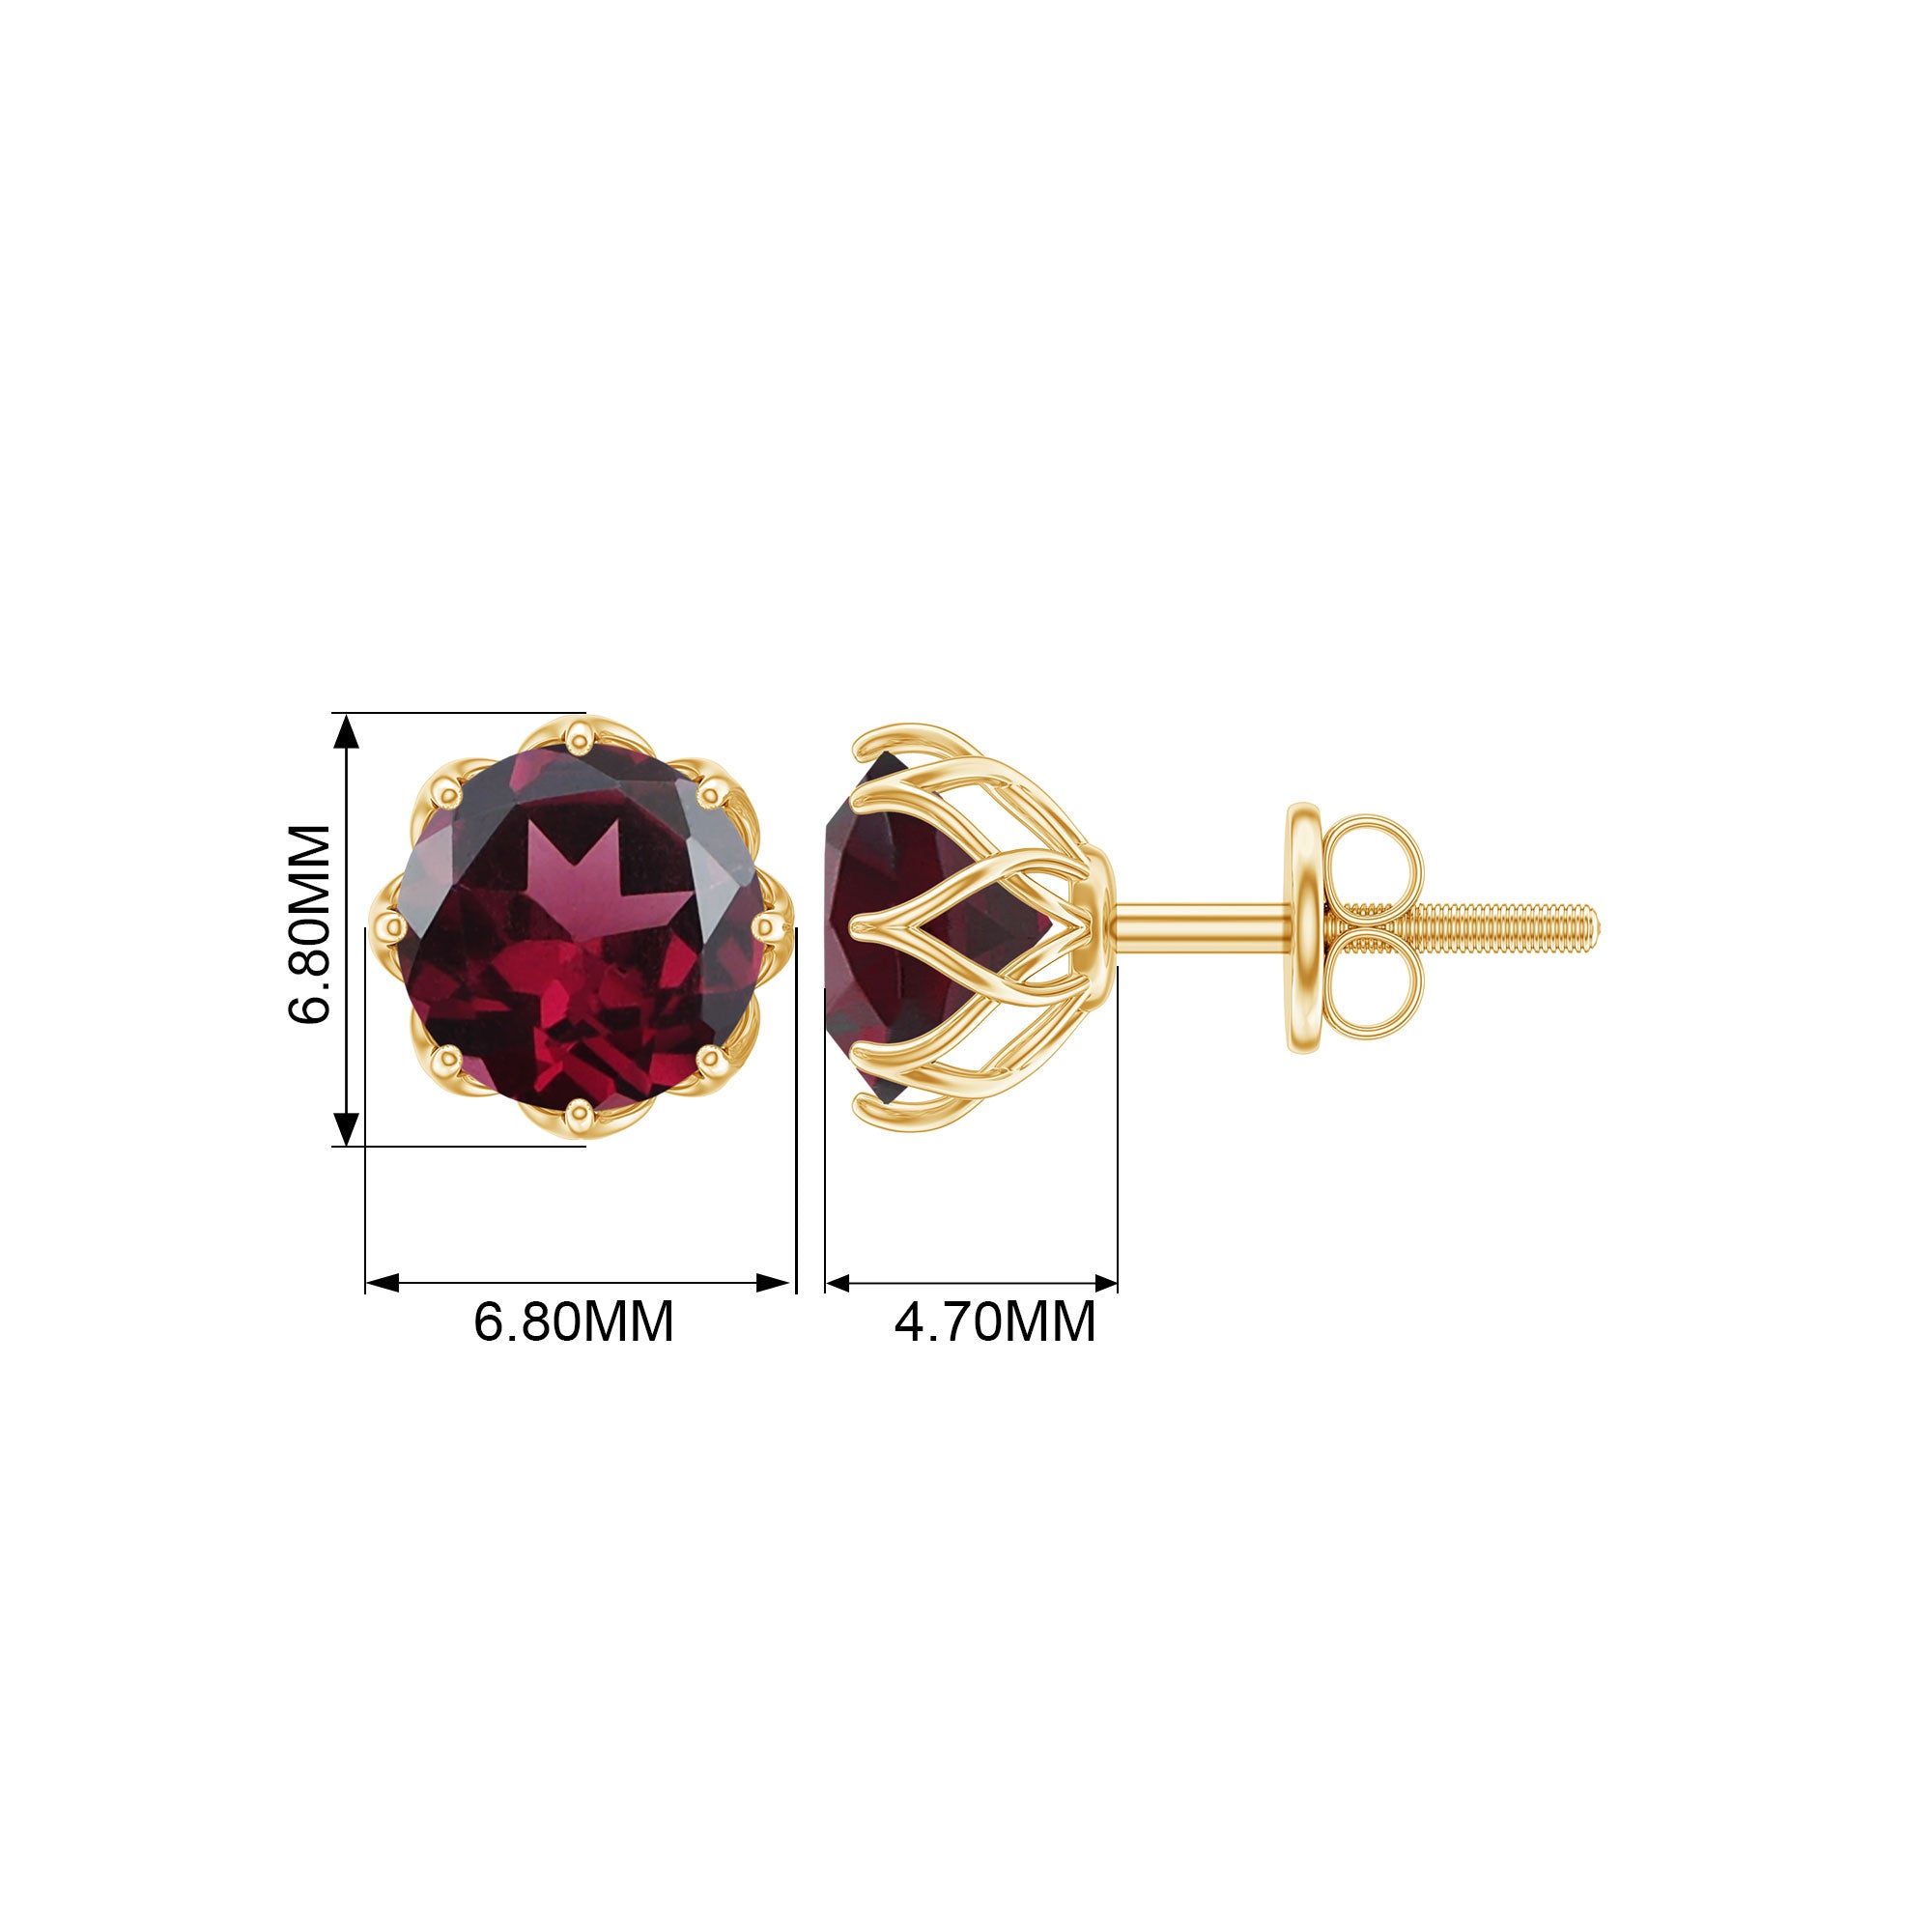 6 MM Decorative Rhodolite Solitaire Stud Earrings Rhodolite - ( AAA ) - Quality - Rosec Jewels